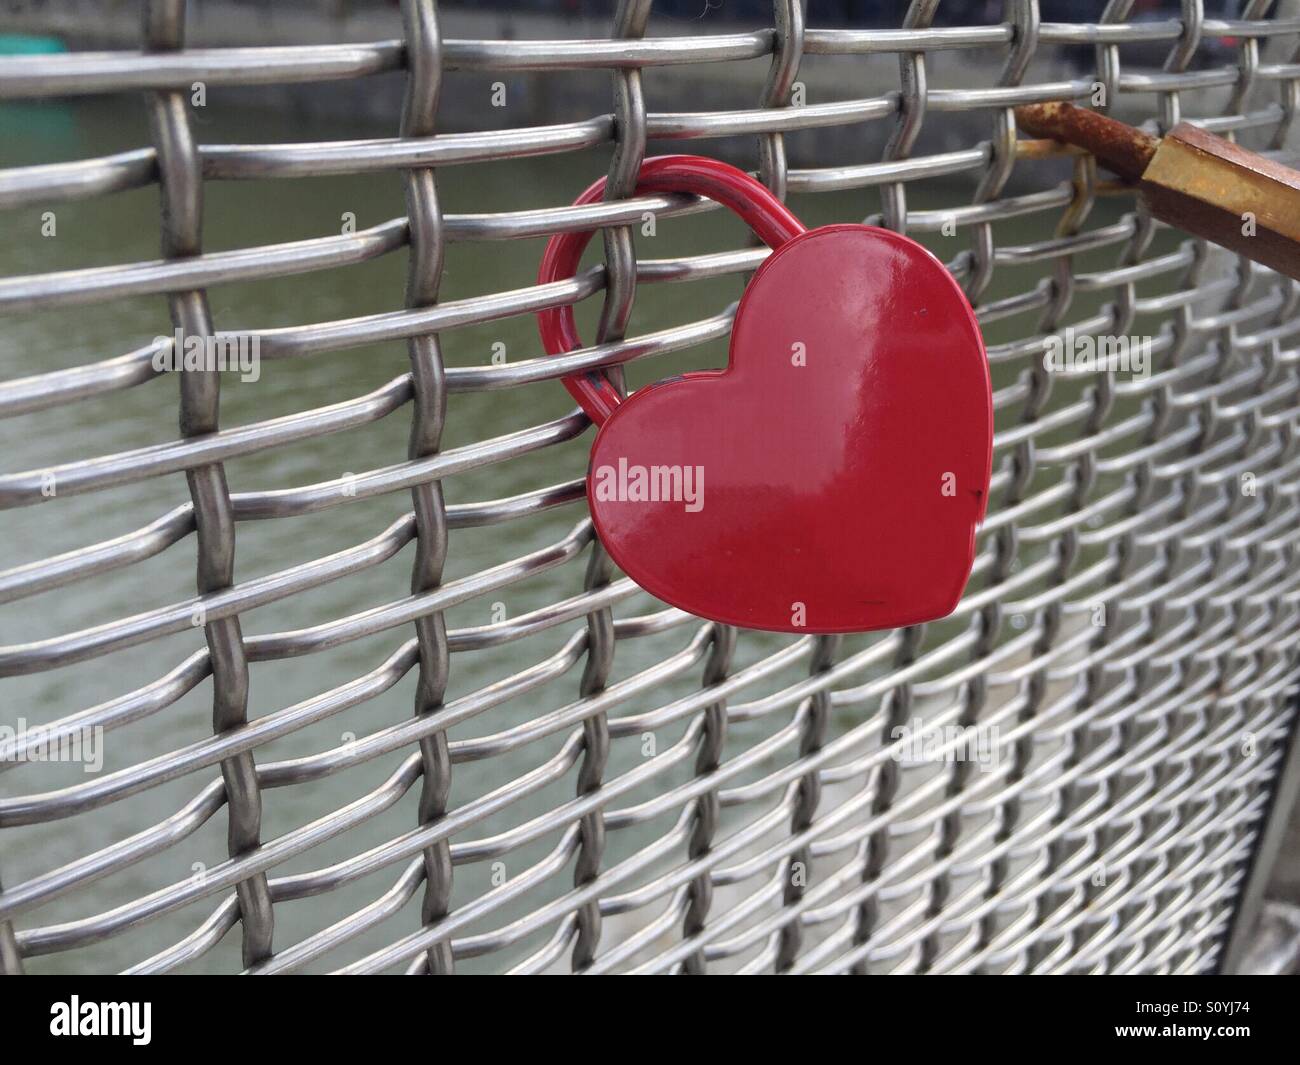 Un cadenas en forme de coeur rouge sur un treillis métallique. Vu sur une passerelle à Bristol. Symbolique de l'amour, le mariage et les relations. En particulier dans un environnement urbain où les gestes romantiques sont rares. Banque D'Images